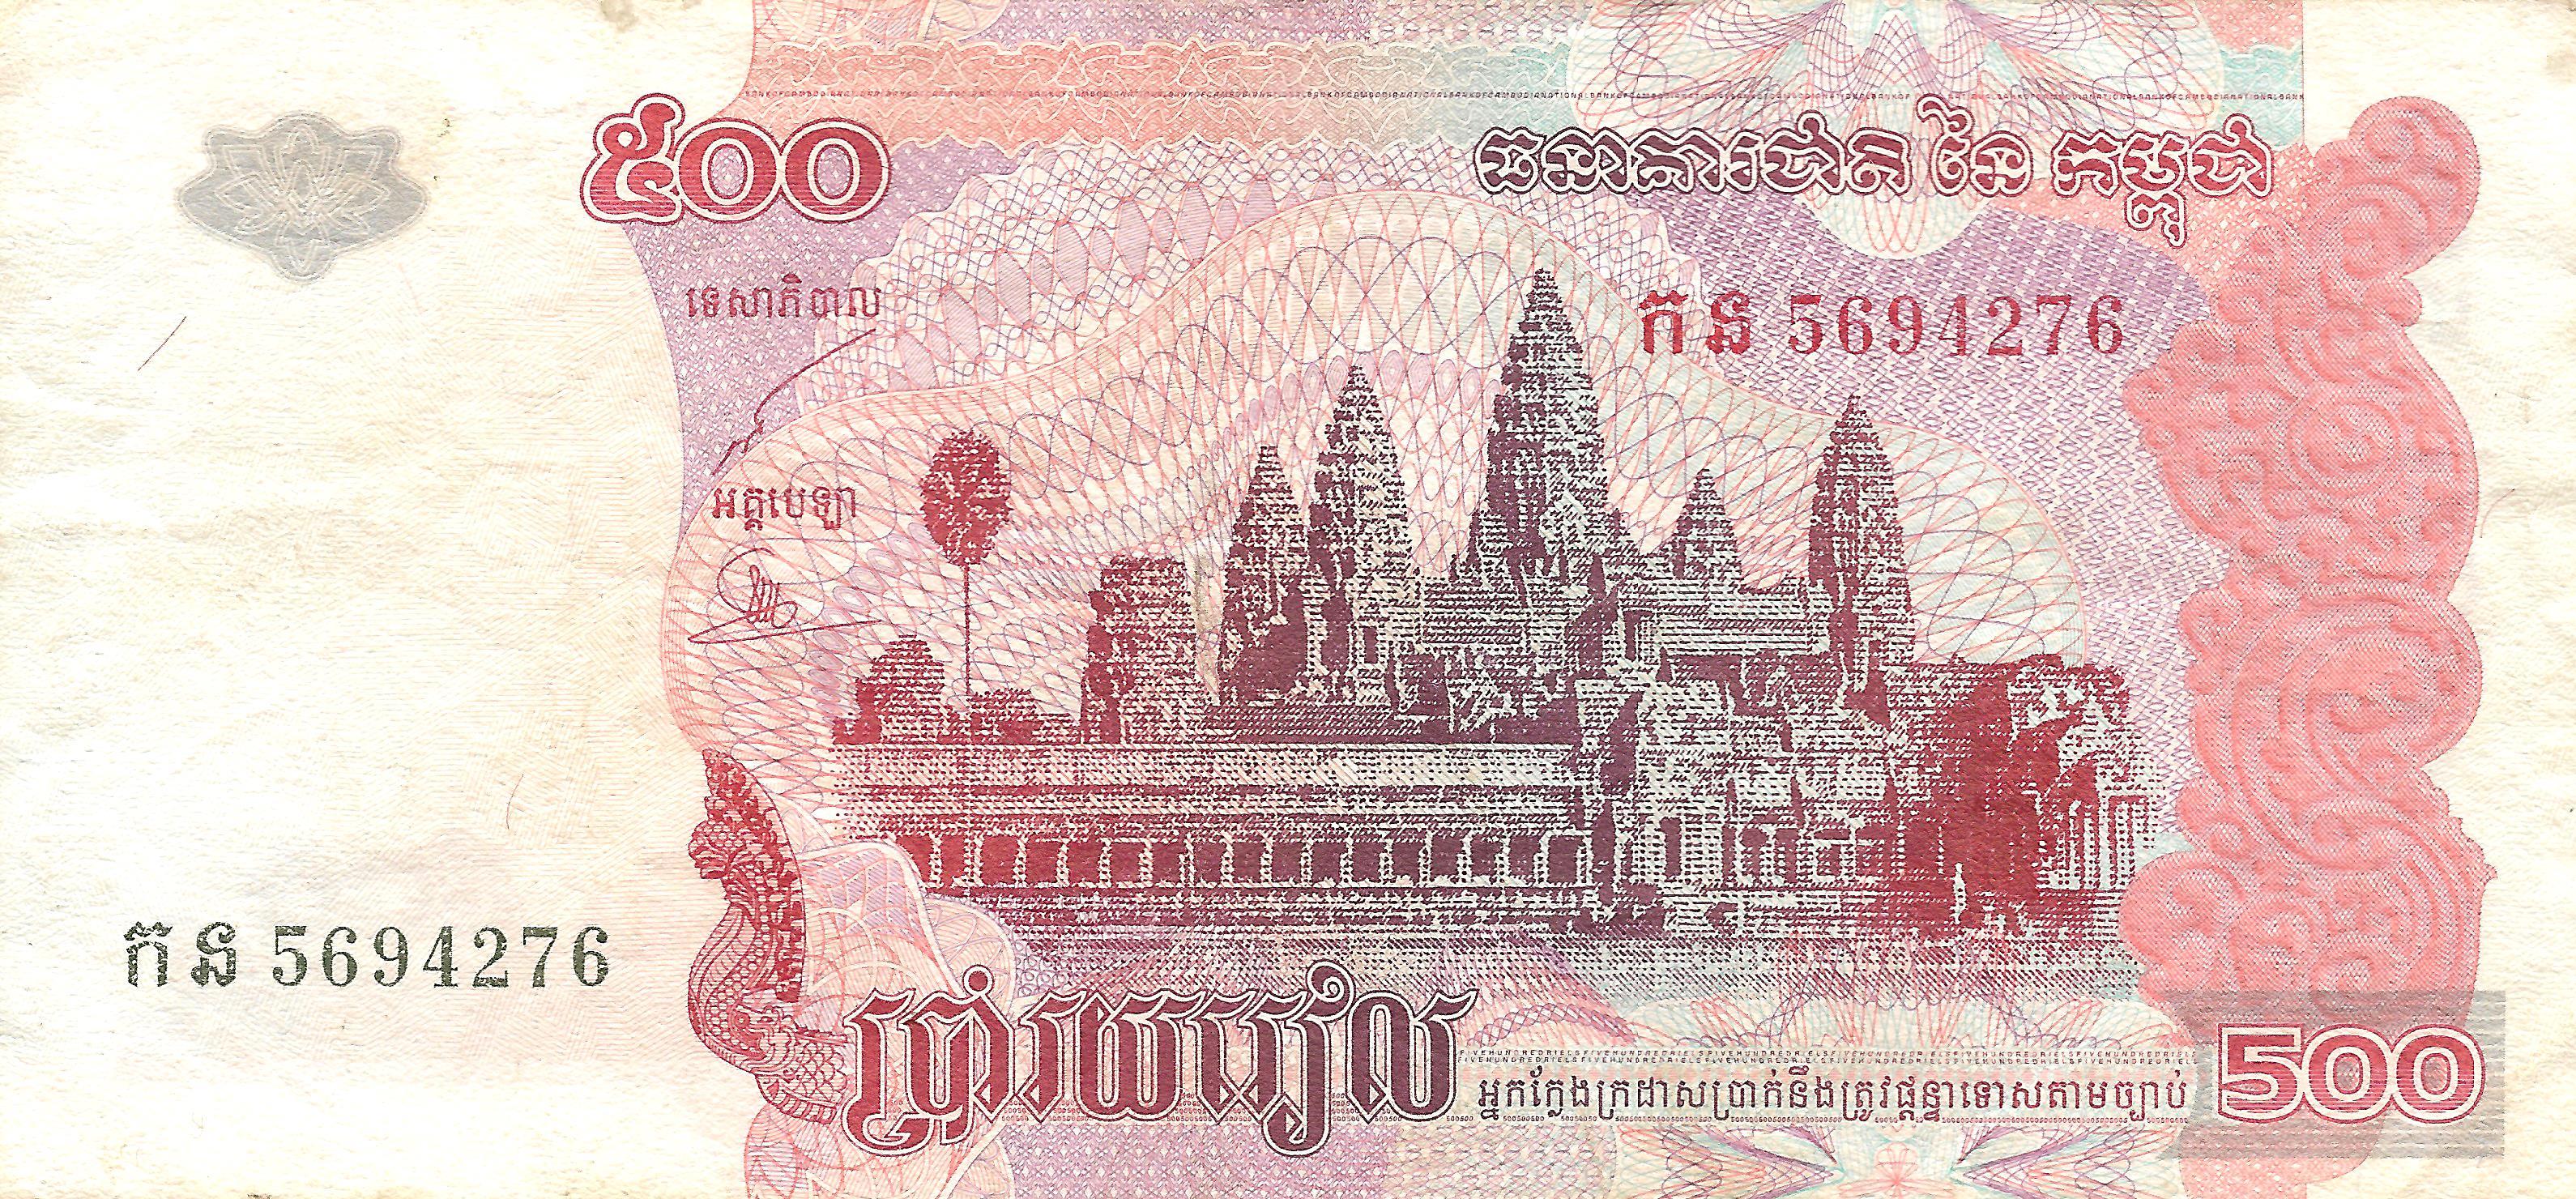 Tiền Campuchia là một trong những loại tiền có giá trị và độc đáo nhất trên thế giới. Nó được làm từ chất liệu cao cấp và được in ấn bằng các hình ảnh đẹp mắt. Hãy xem hình ảnh liên quan đến Tiền Campuchia để tìm hiểu về nét độc đáo của đồng tiền này.